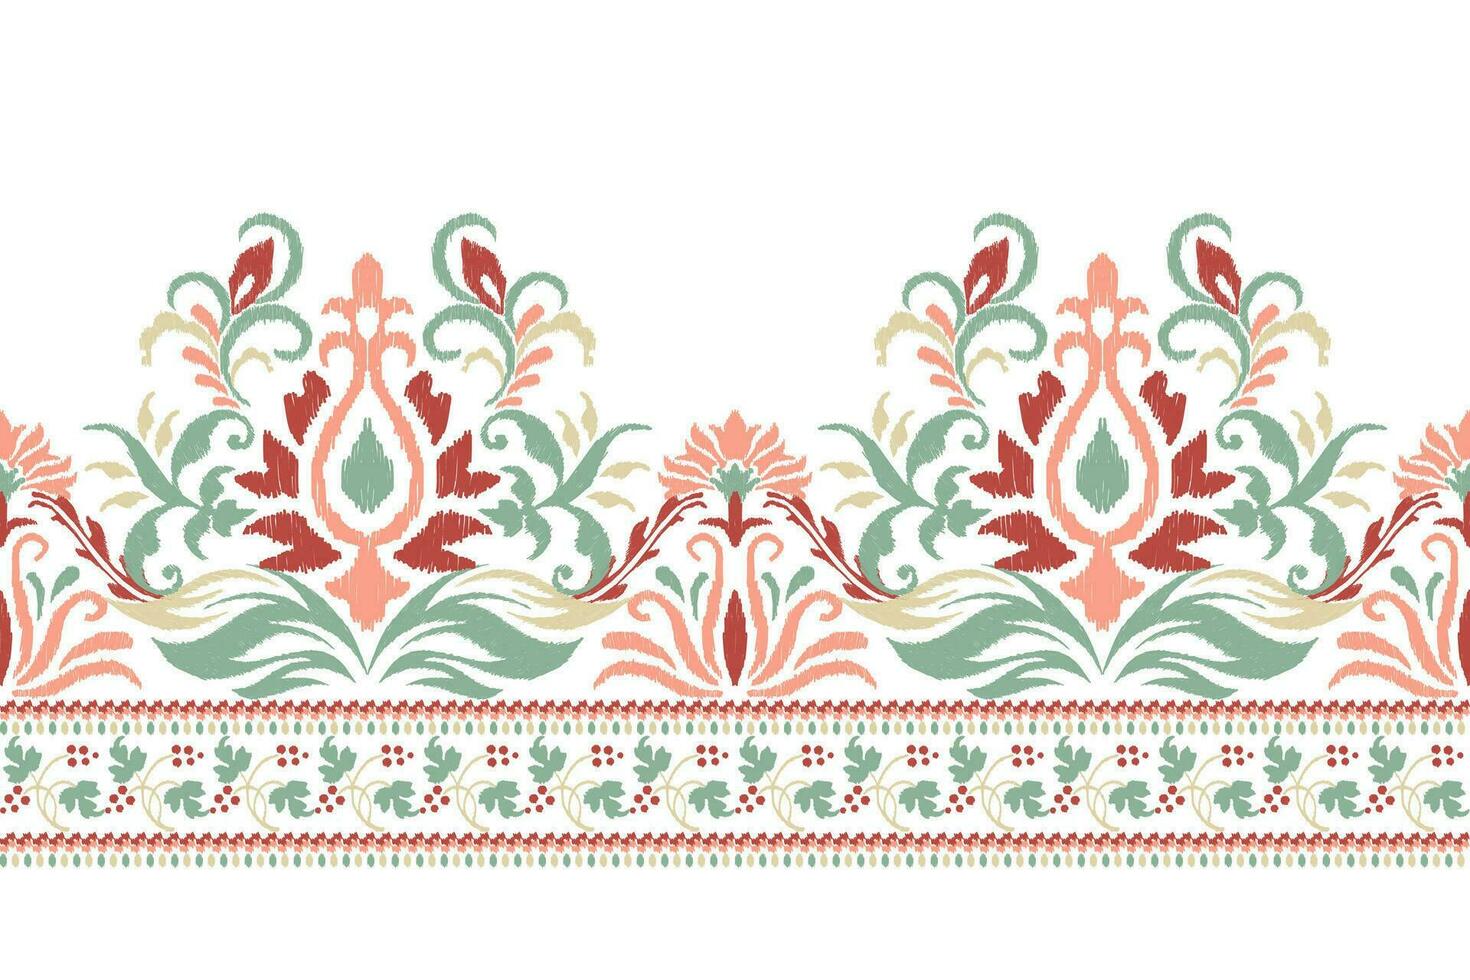 ikat floral cachemir bordado en blanco fondo.ikat étnico orientalista modelo tradicional.azteca estilo resumen ilustración.diseño para textura,tela,ropa,envoltura,decoración,pareo,bufanda. vector